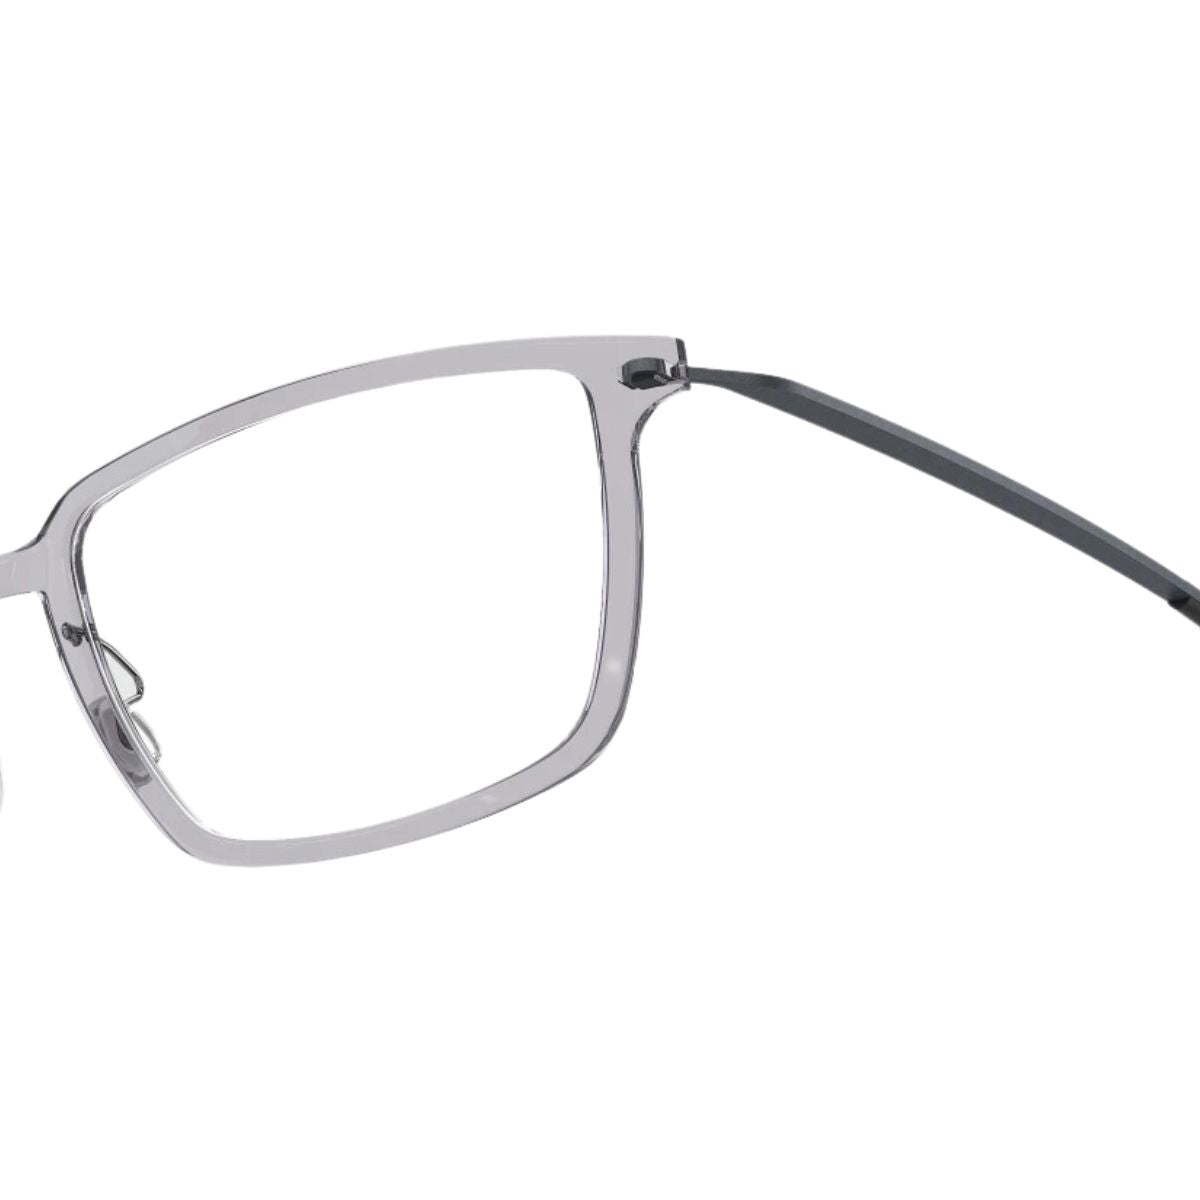 "Shop Stylish Lindberg Eyewear Optical frames For Men's & Women's At Optorium"